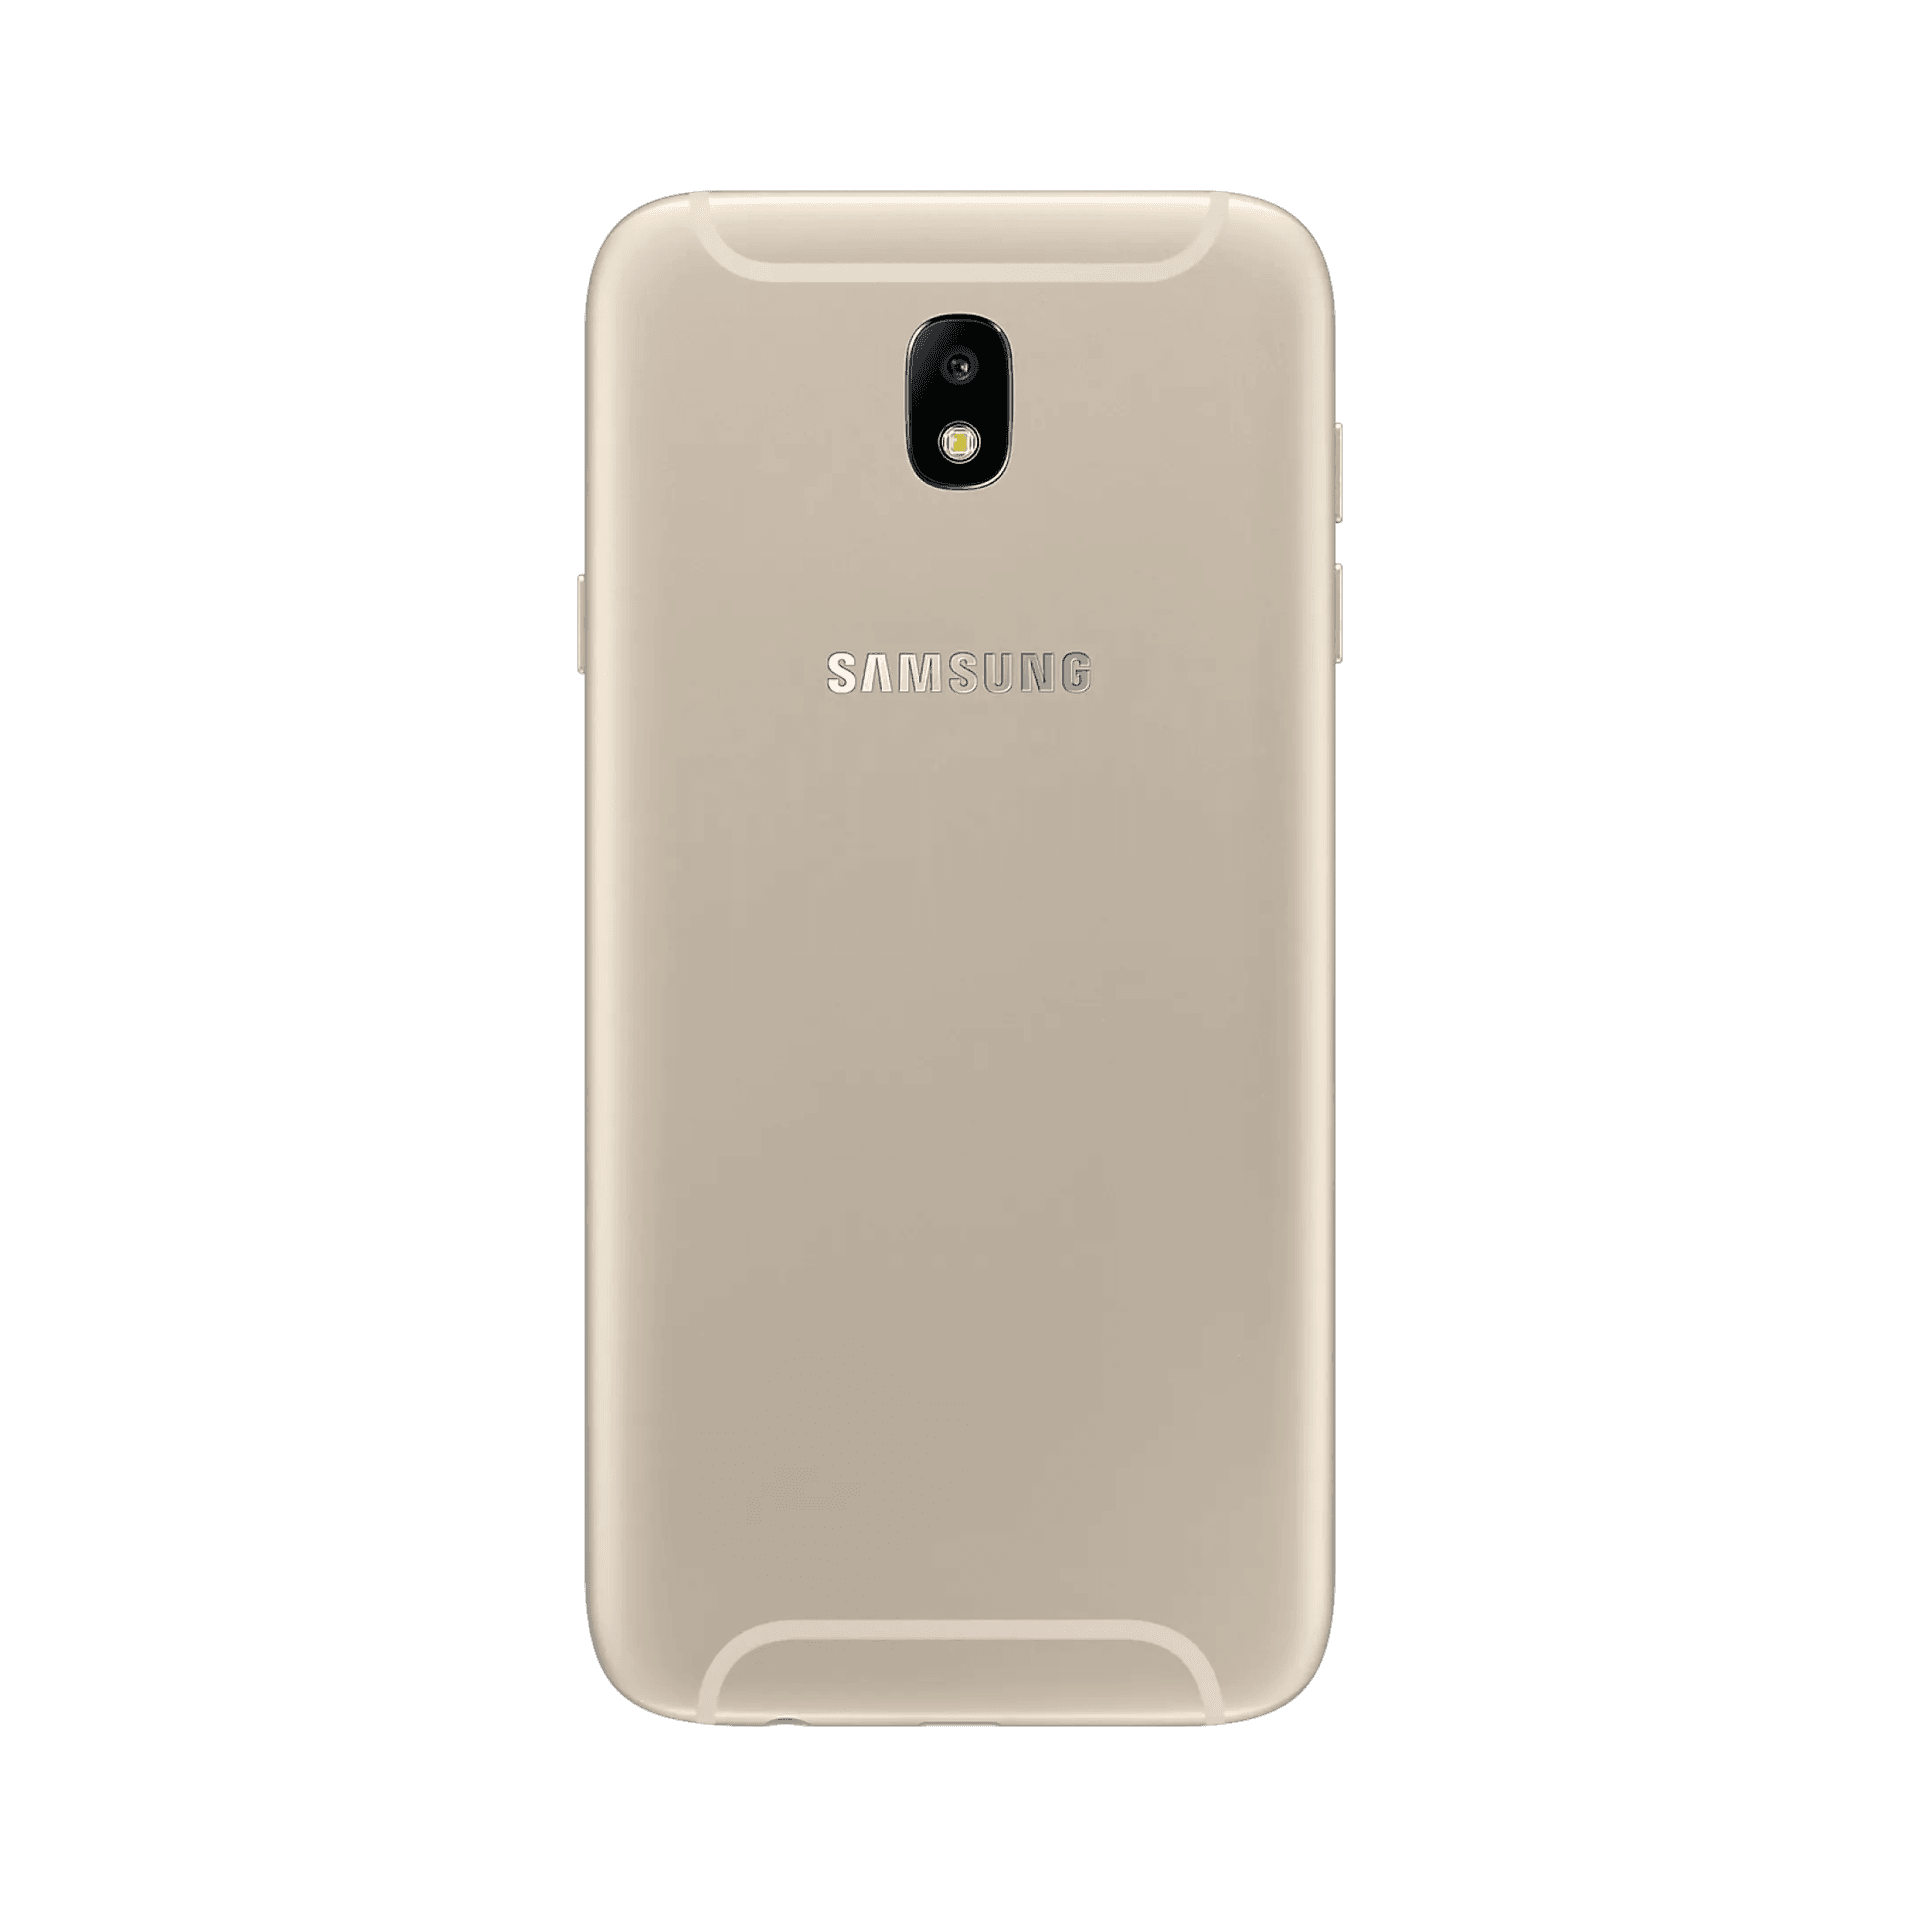 Samsung Galaxy J7 Pro - 32 GB - Altın